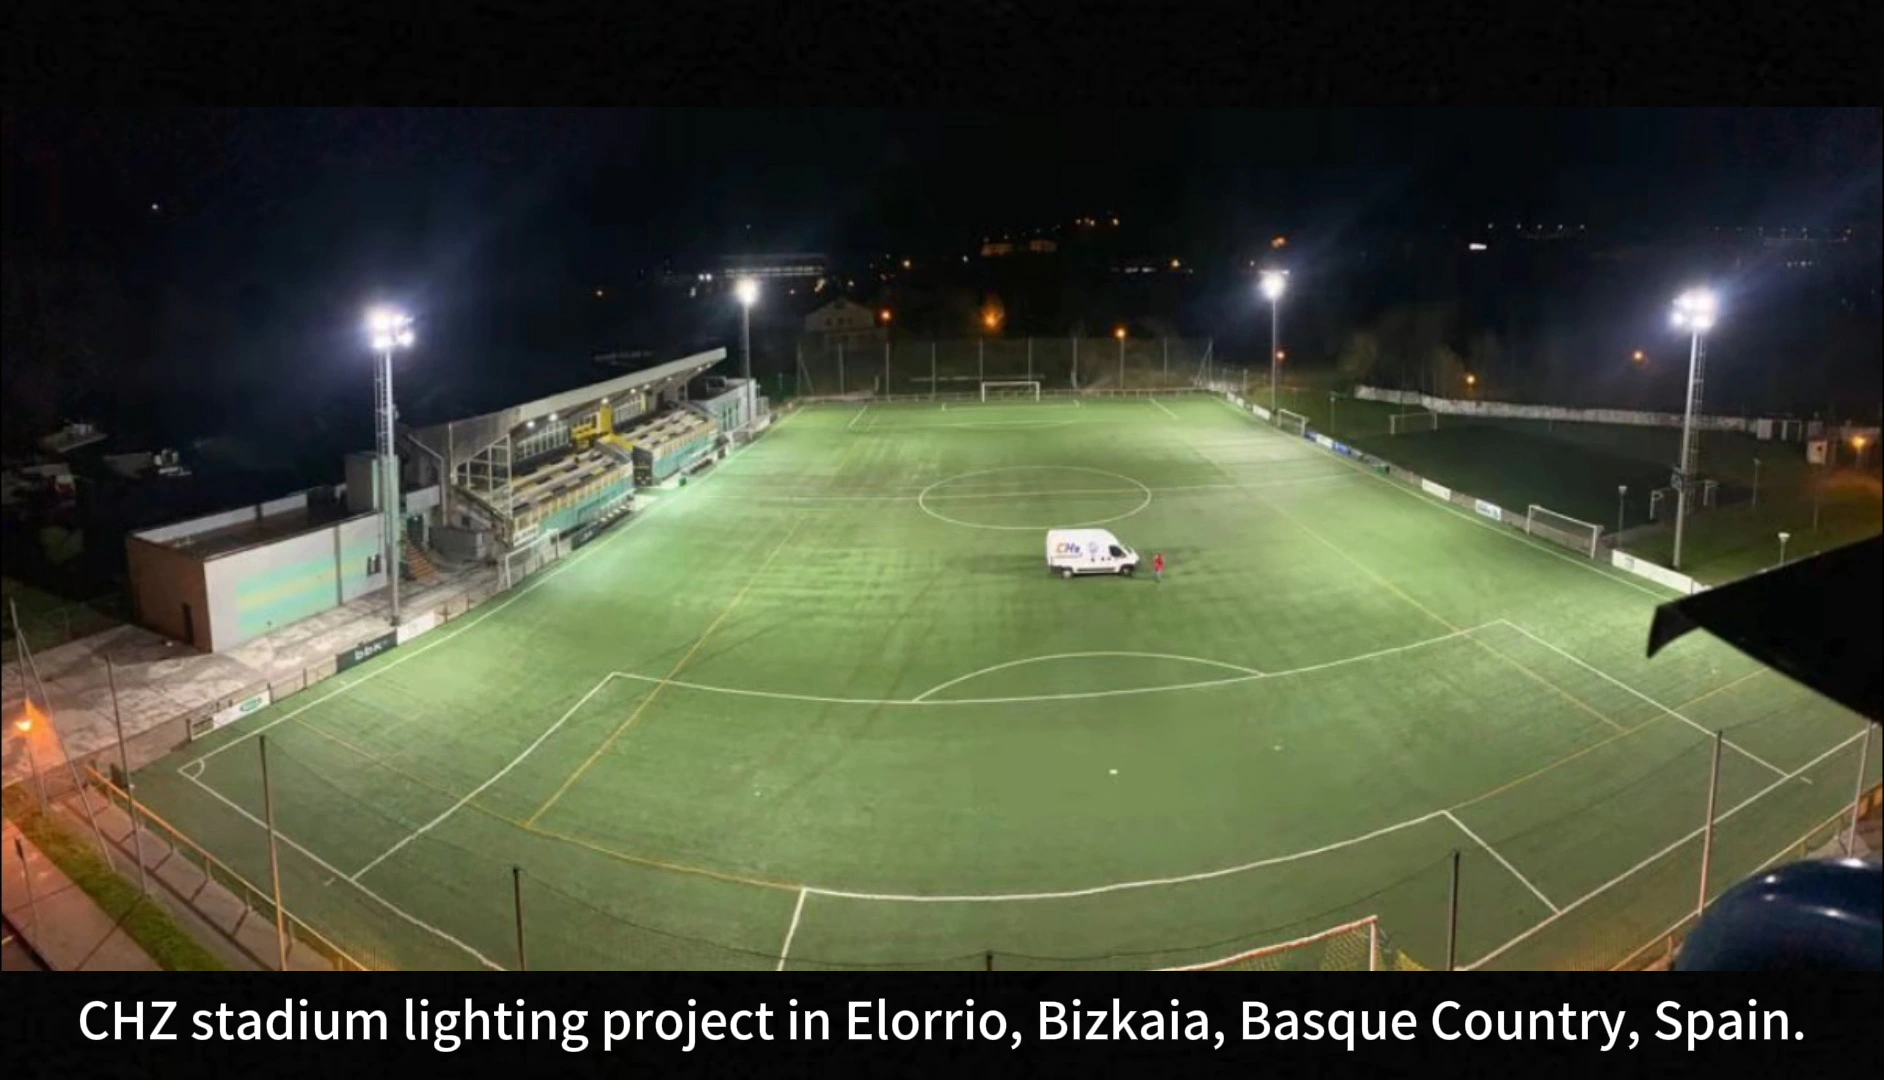 مشروع إضاءة ملعب CHZ الاحترافي الجيد في إلوريو، بيزكايا، أكثر الباسك، إسبانيا العمالقة صانع CHZ-FL22